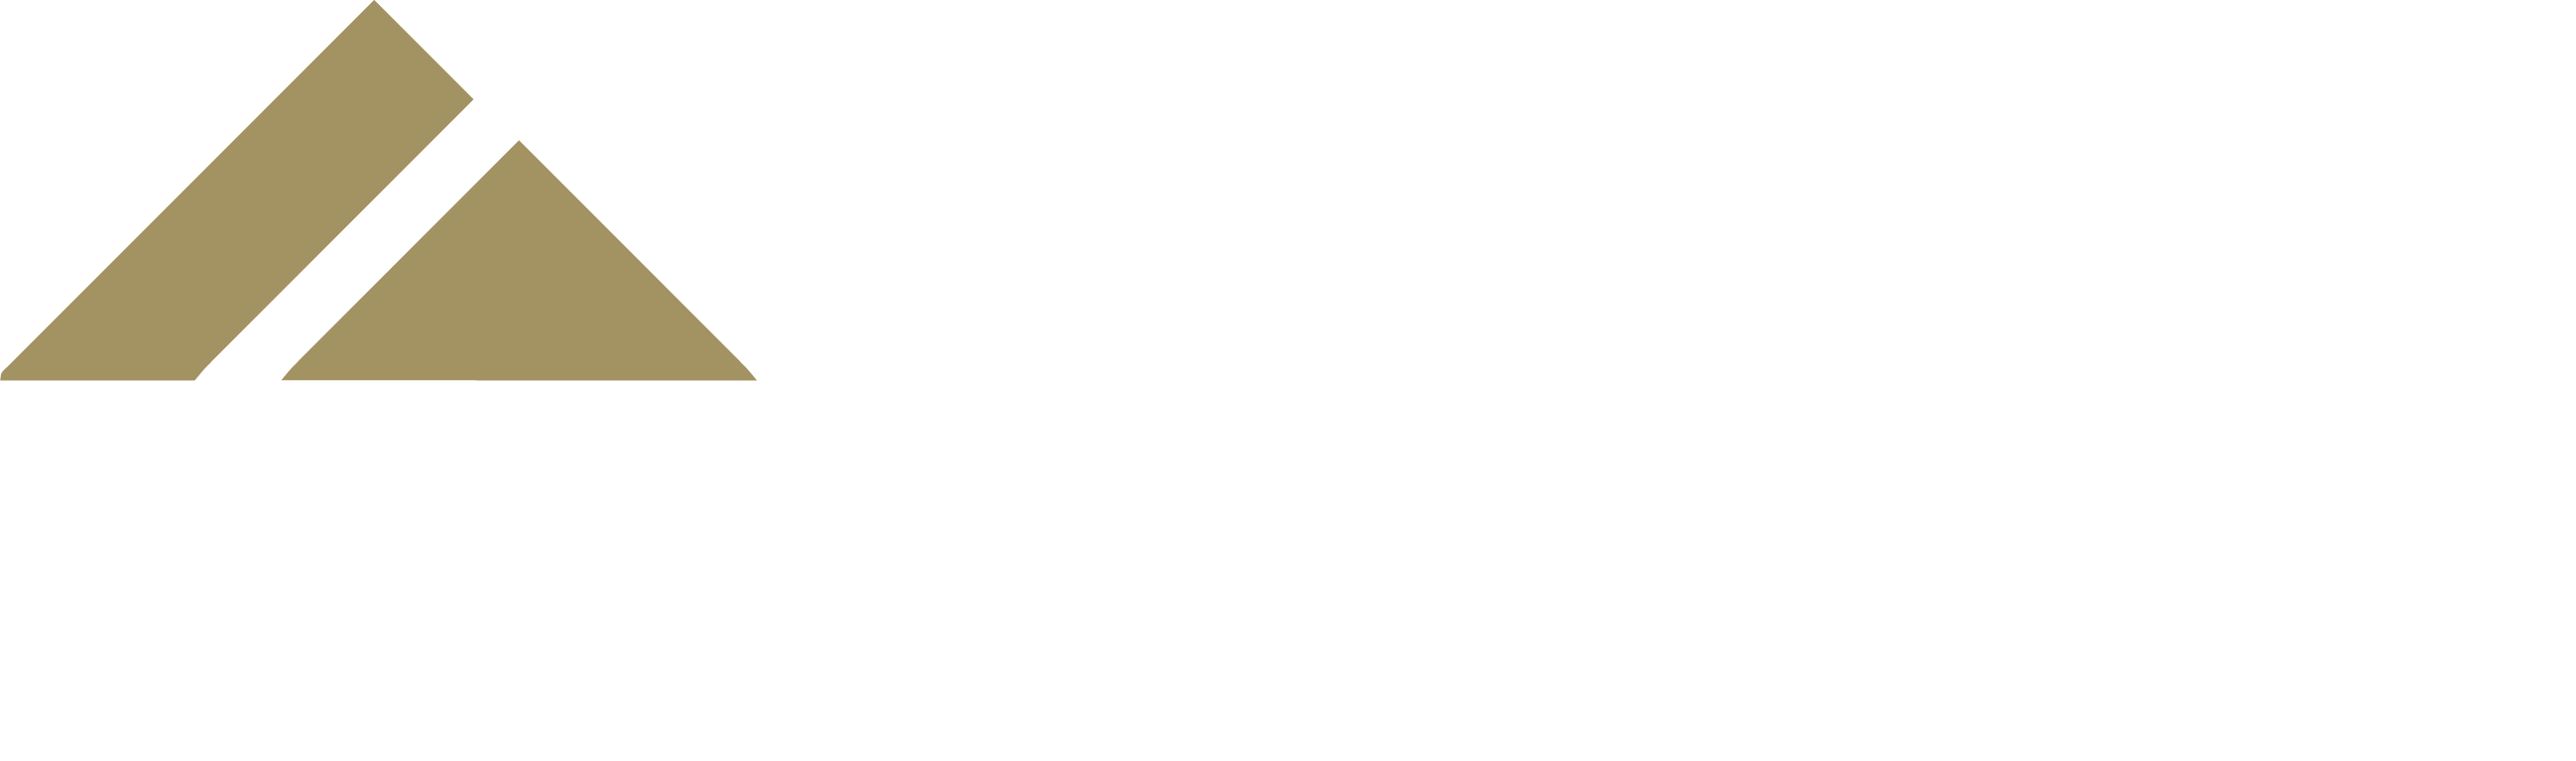 Genesis logo reversed